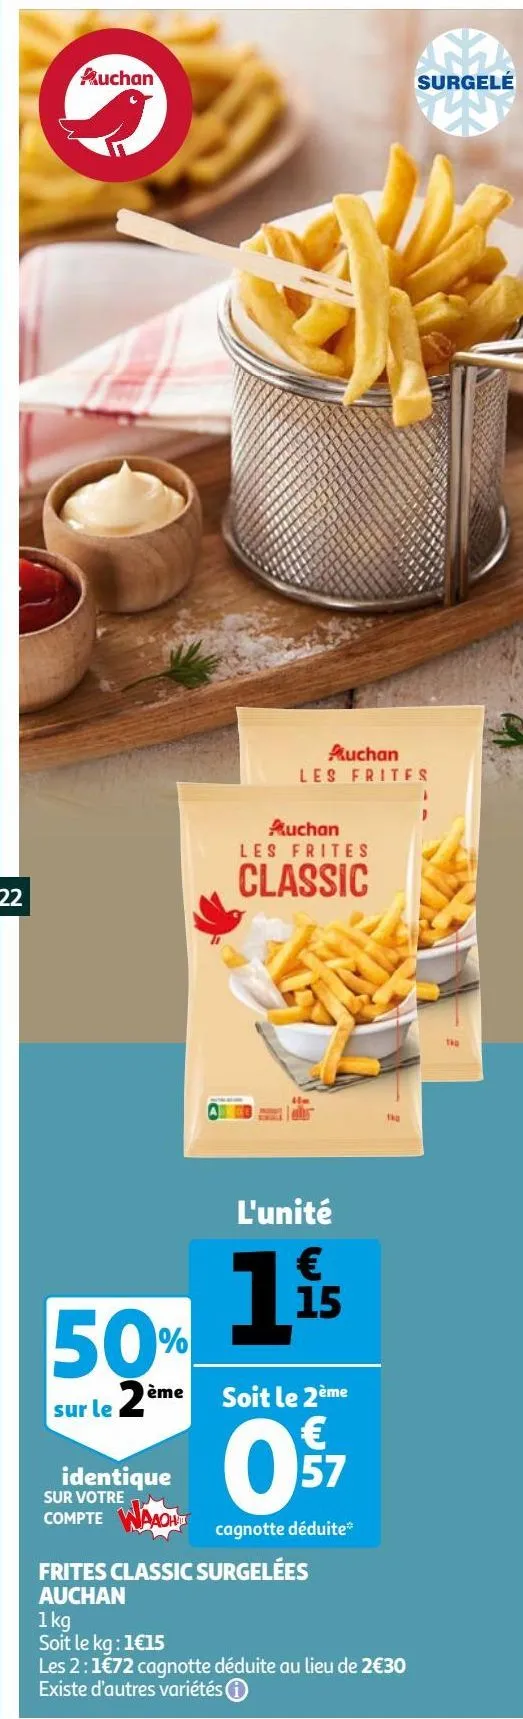 frites classic surgelées auchan